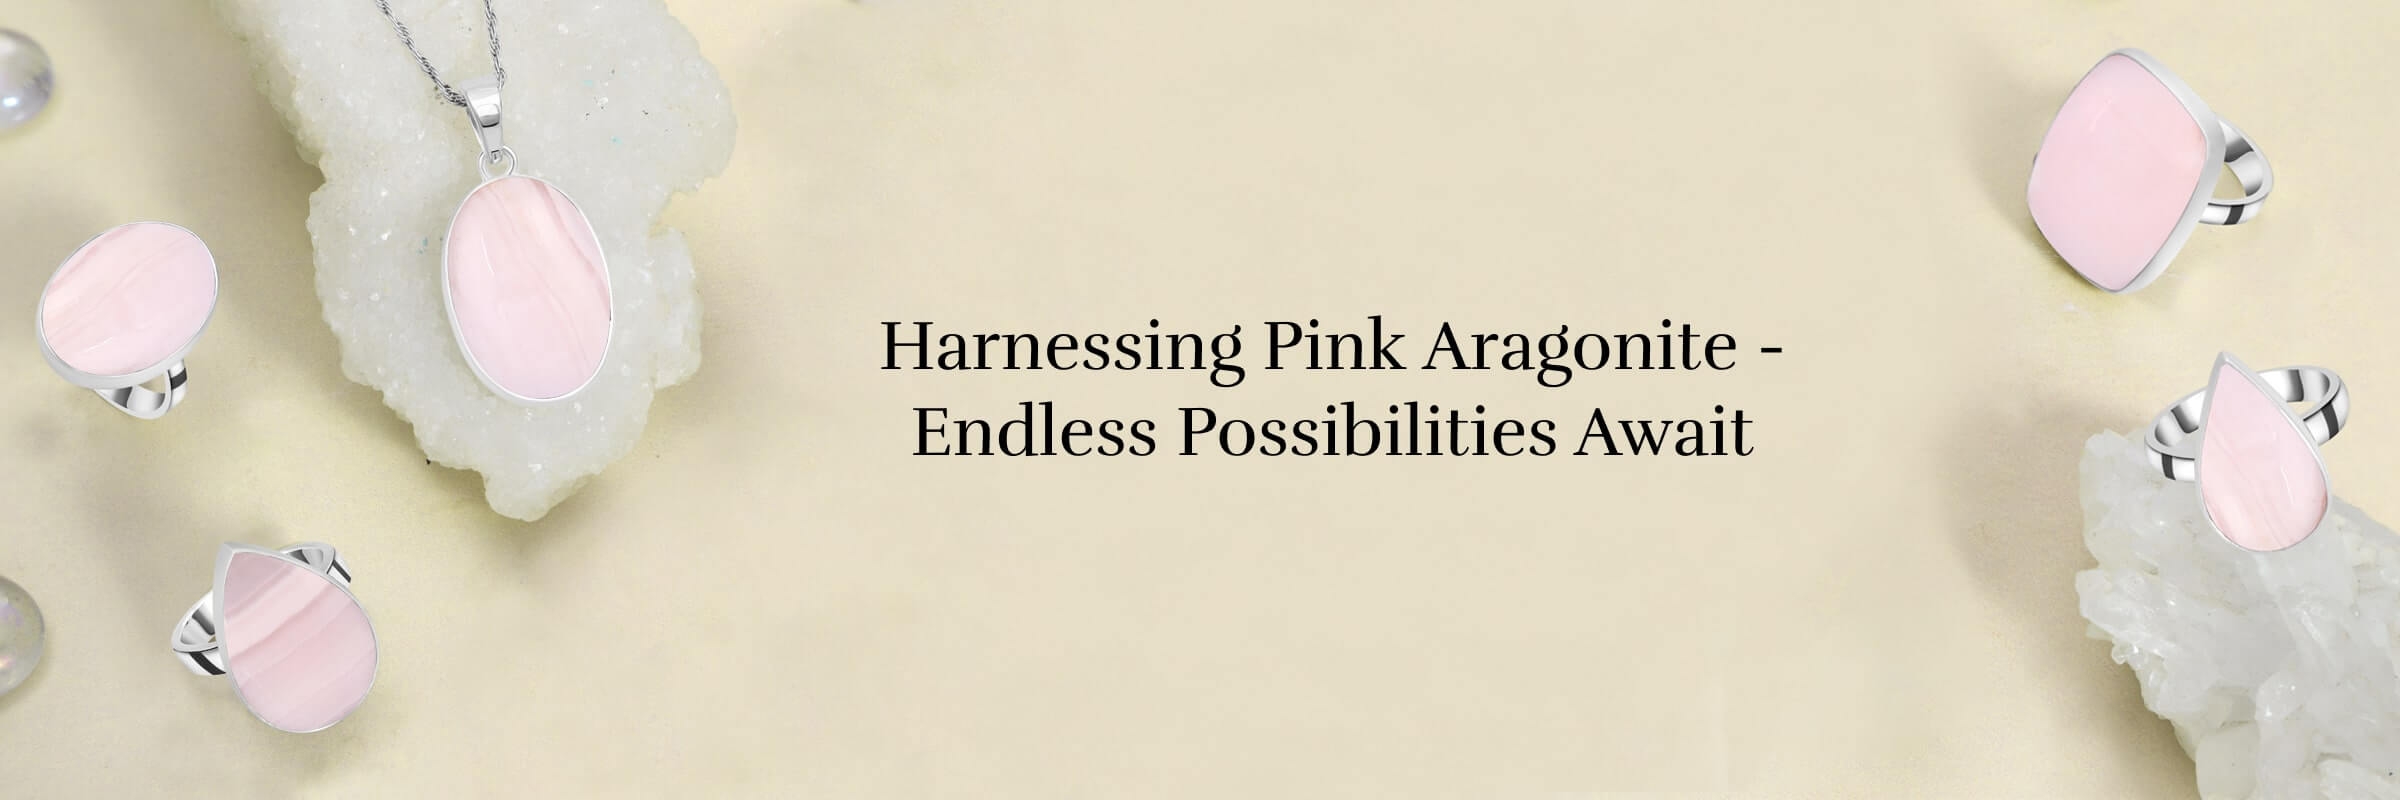 Pink Aragonite Uses